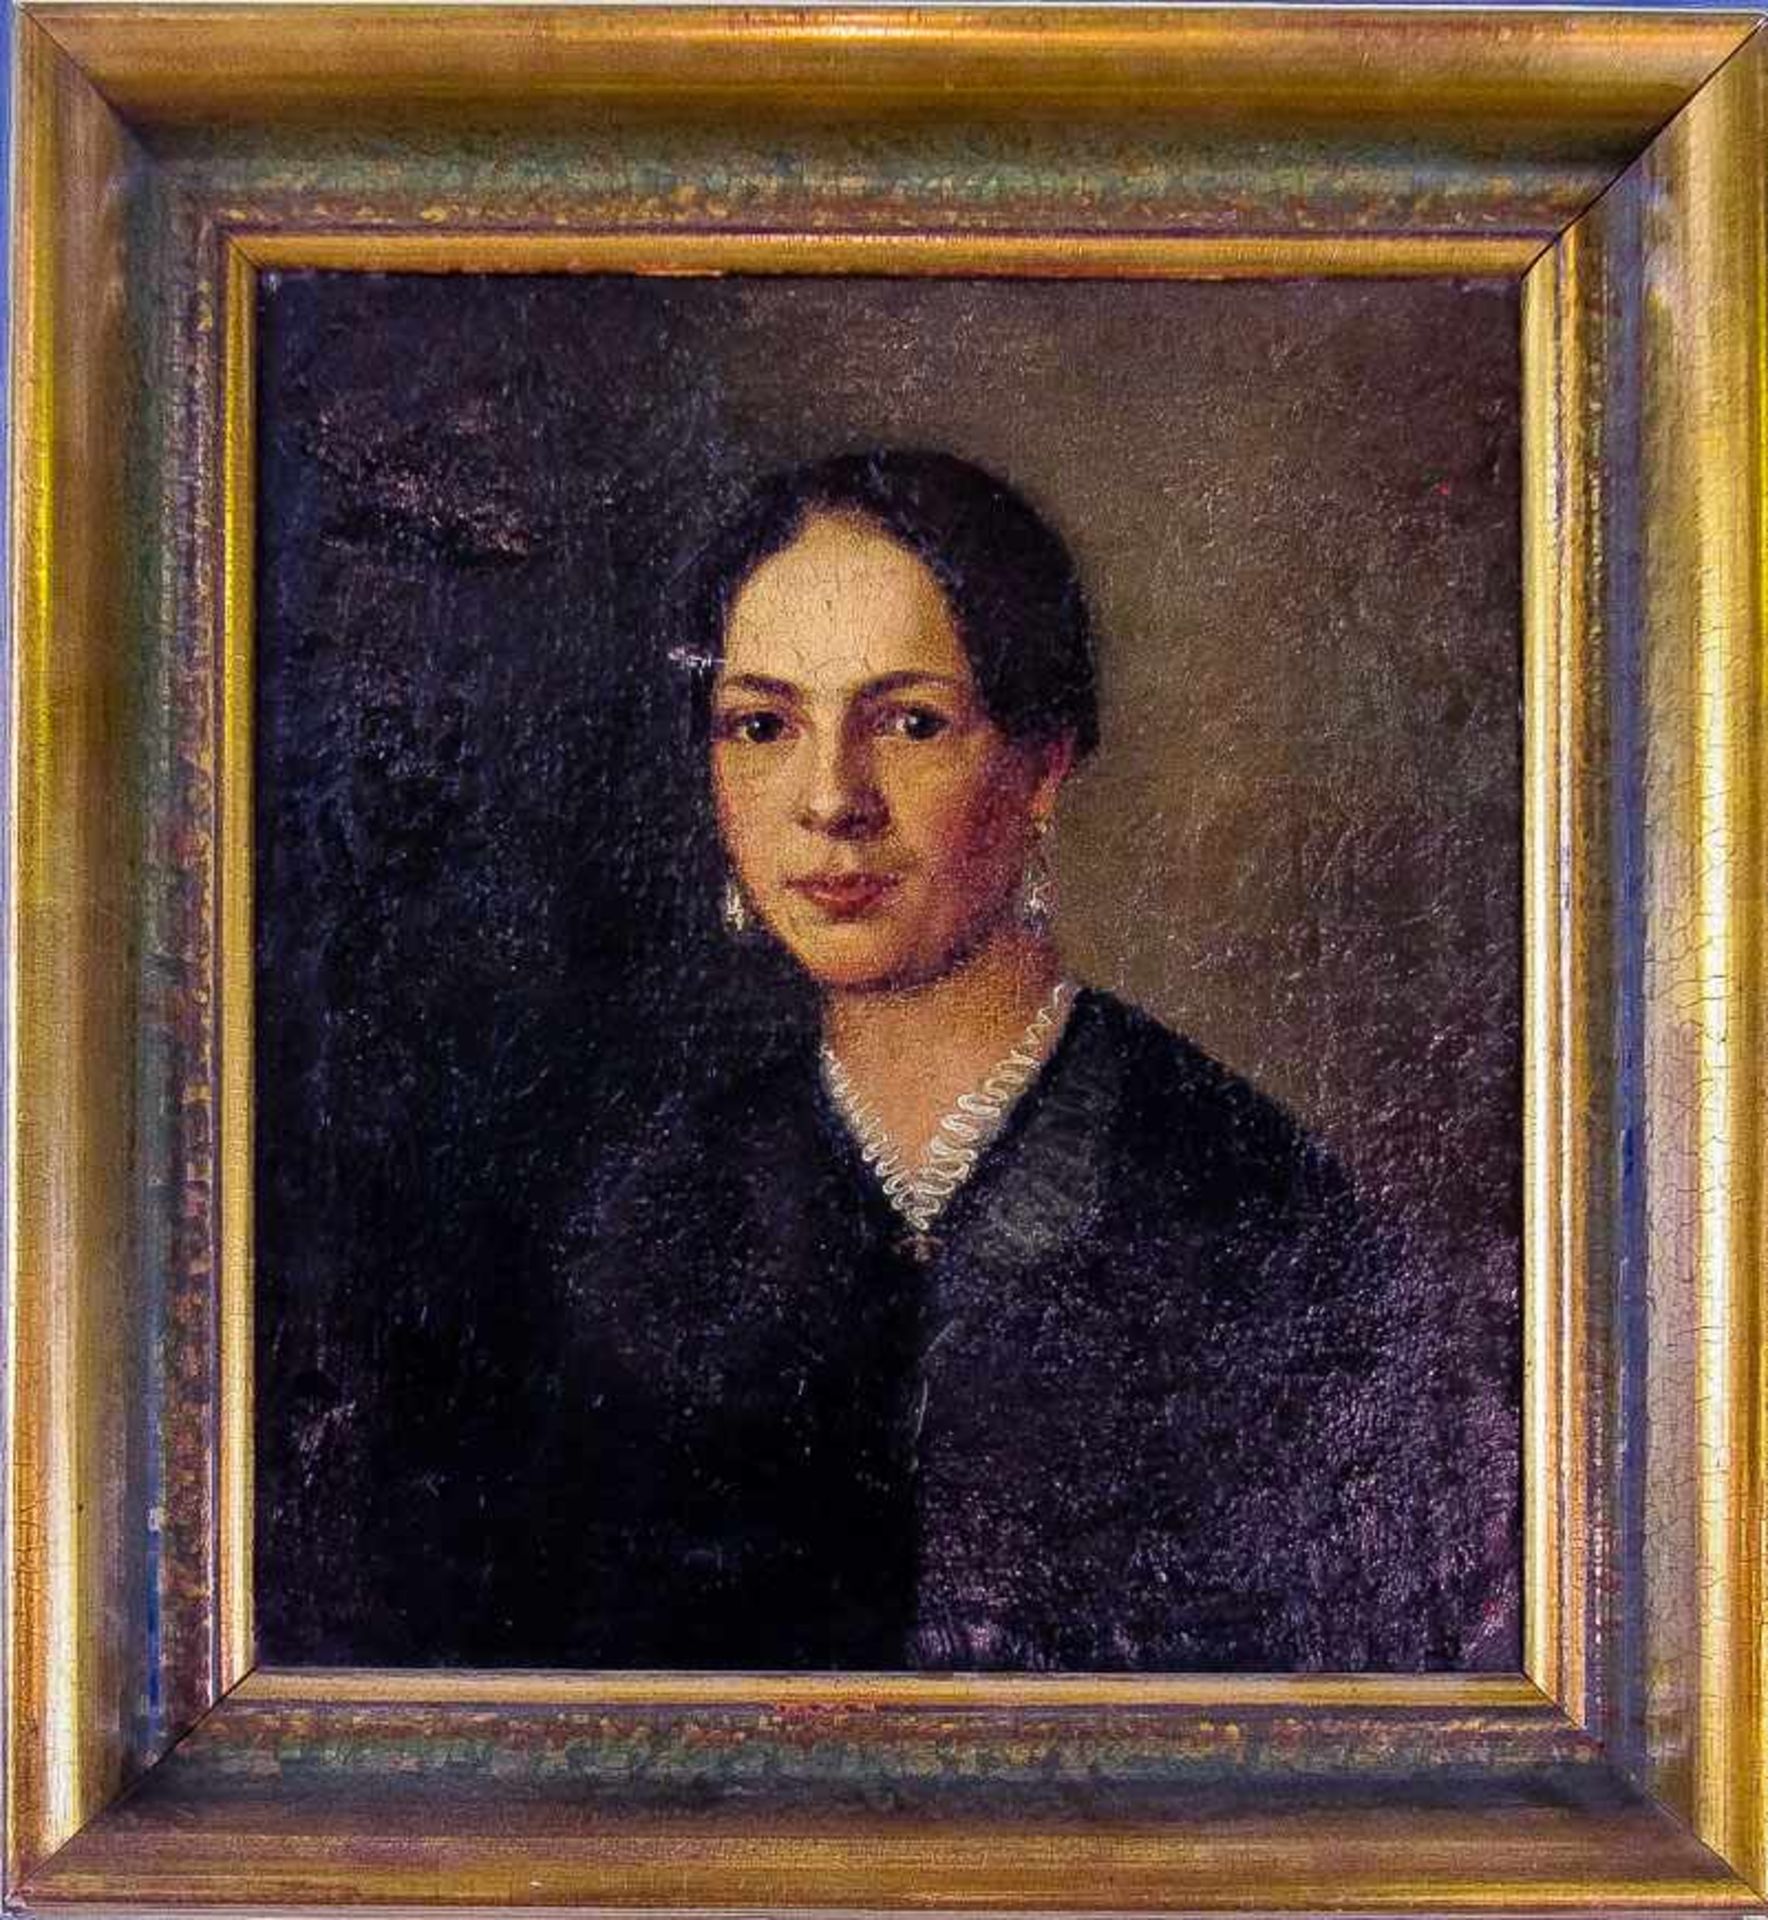 Bildnismaler (1. H. 19. Jh.)Junge Fraumit streng gescheiteltem Haar und dunklem Kleid. Brustbildnis.